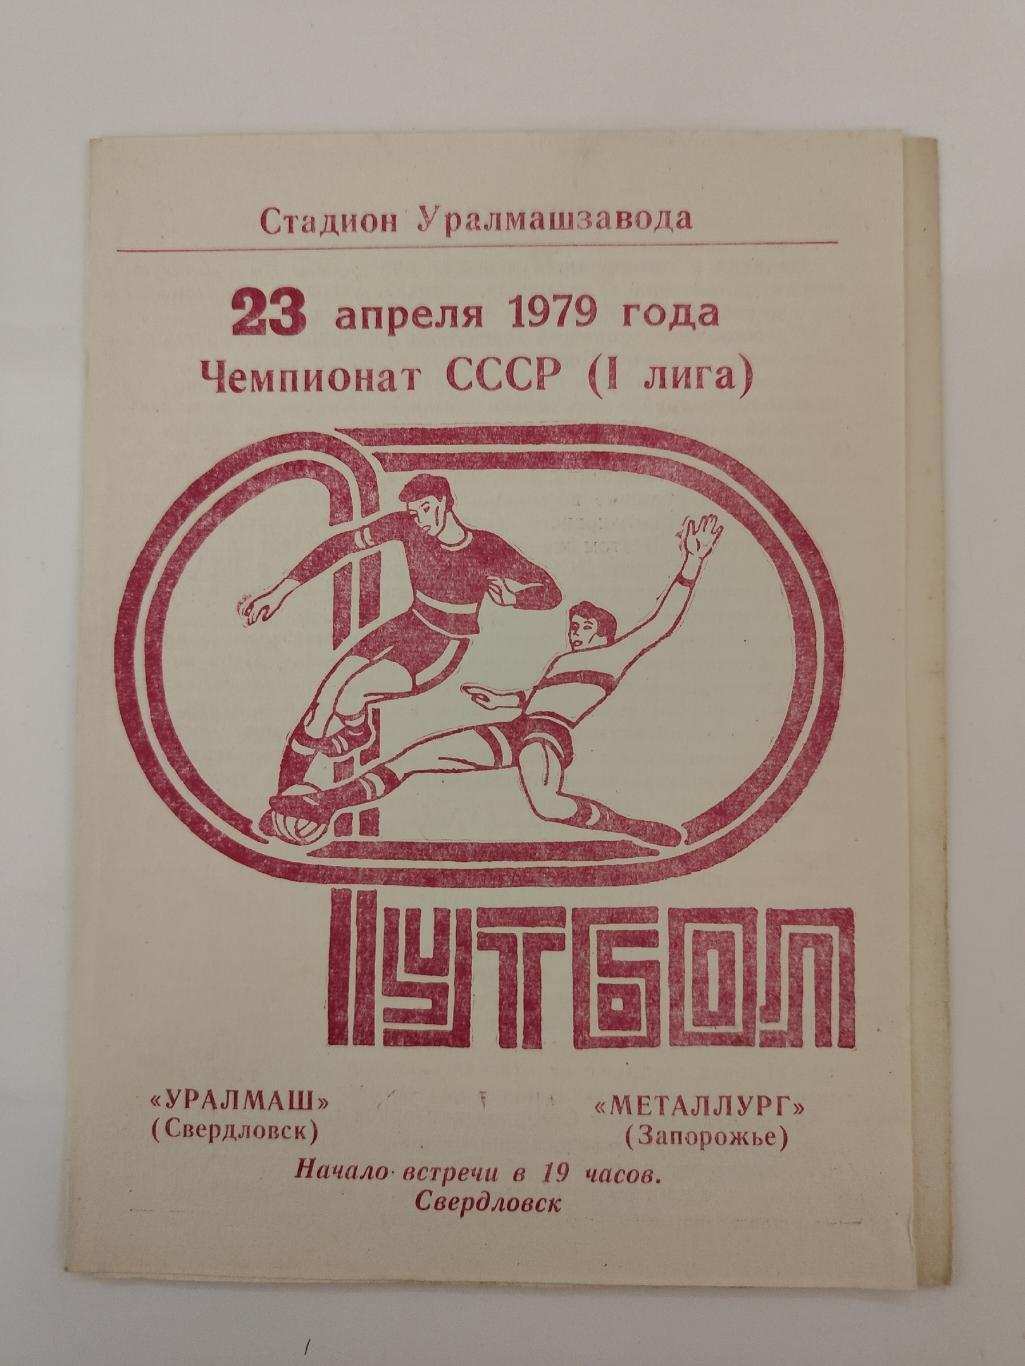 Уралмаш Свердловск - Металлург Запорожье 1979